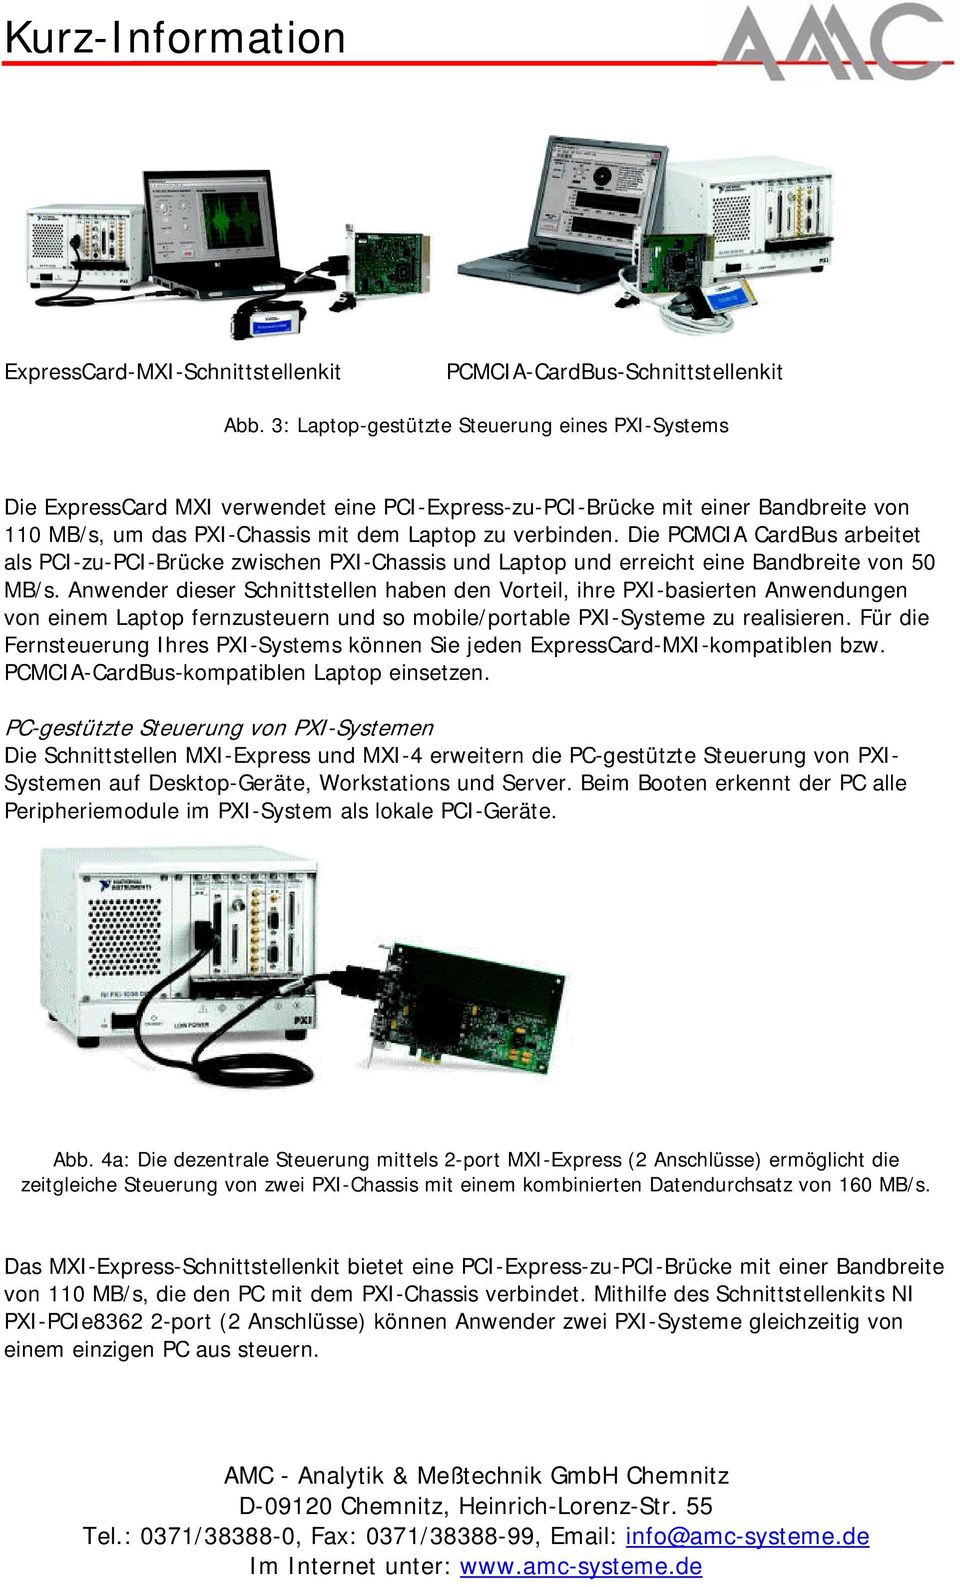 Die PCMCIA CardBus arbeitet als PCI-zu-PCI-Brücke zwischen PXI-Chassis und Laptop und erreicht eine Bandbreite von 50 MB/s.